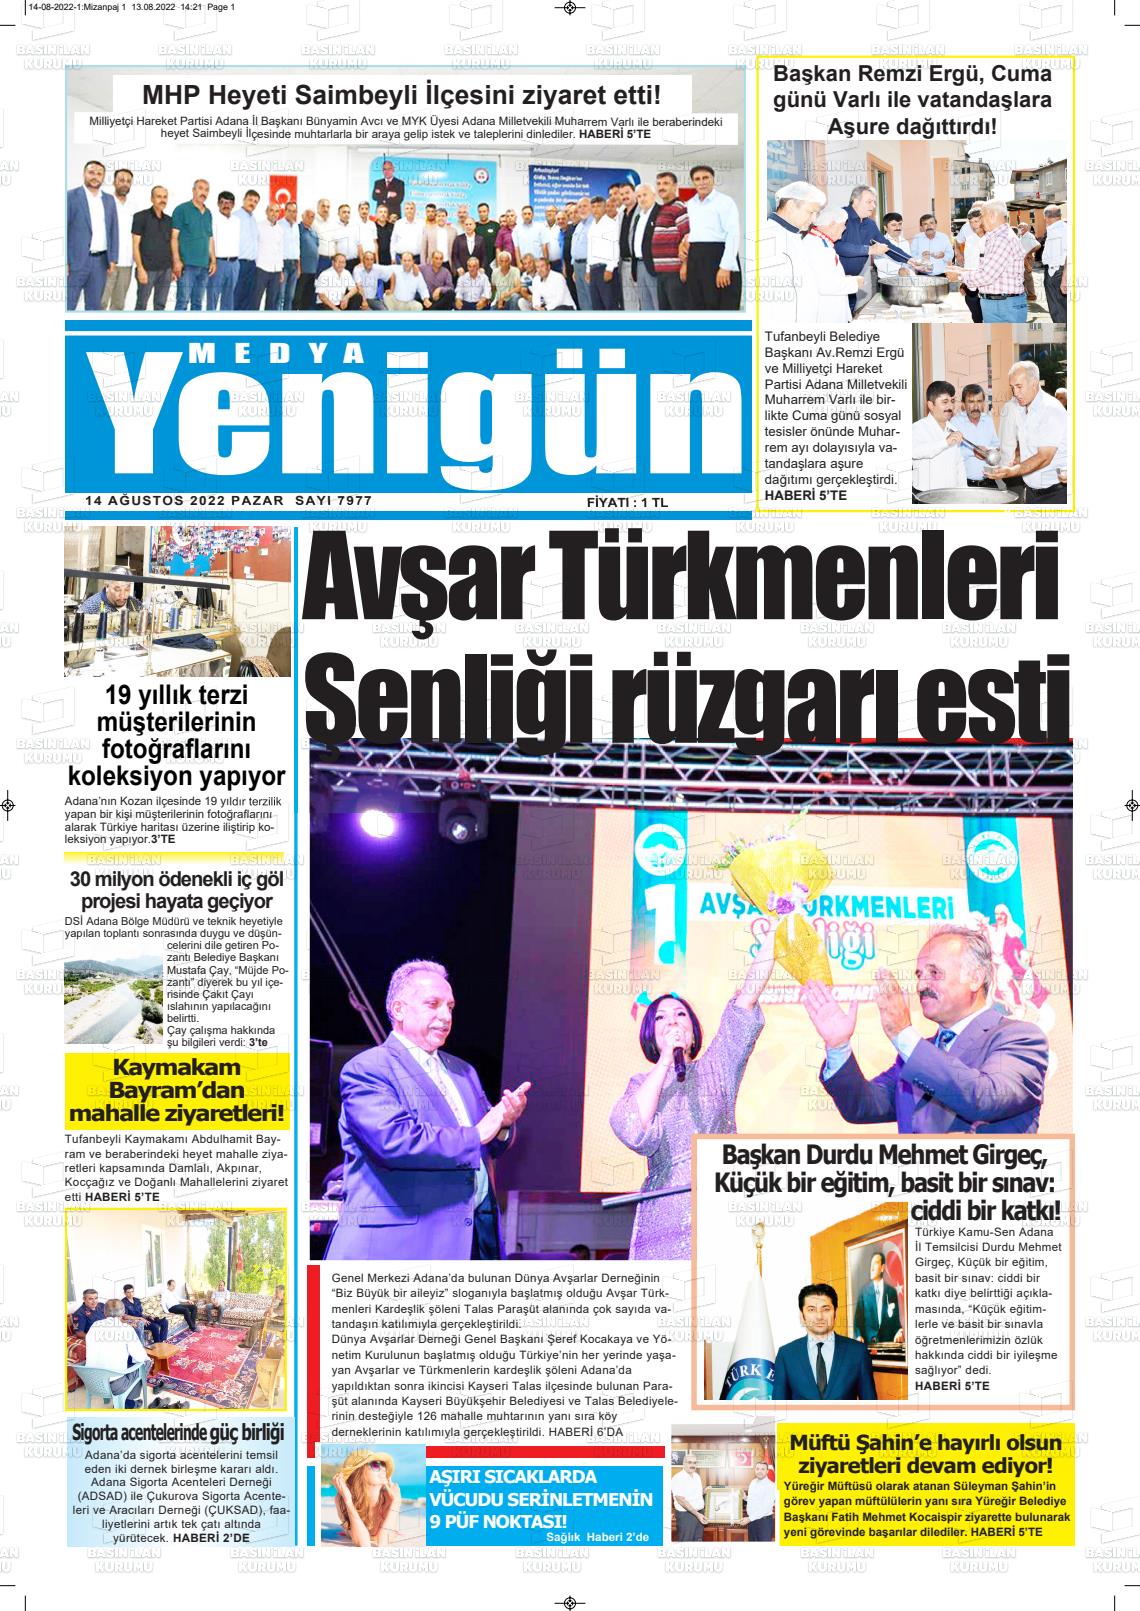 14 Ağustos 2022 Medya Yenigün Gazete Manşeti